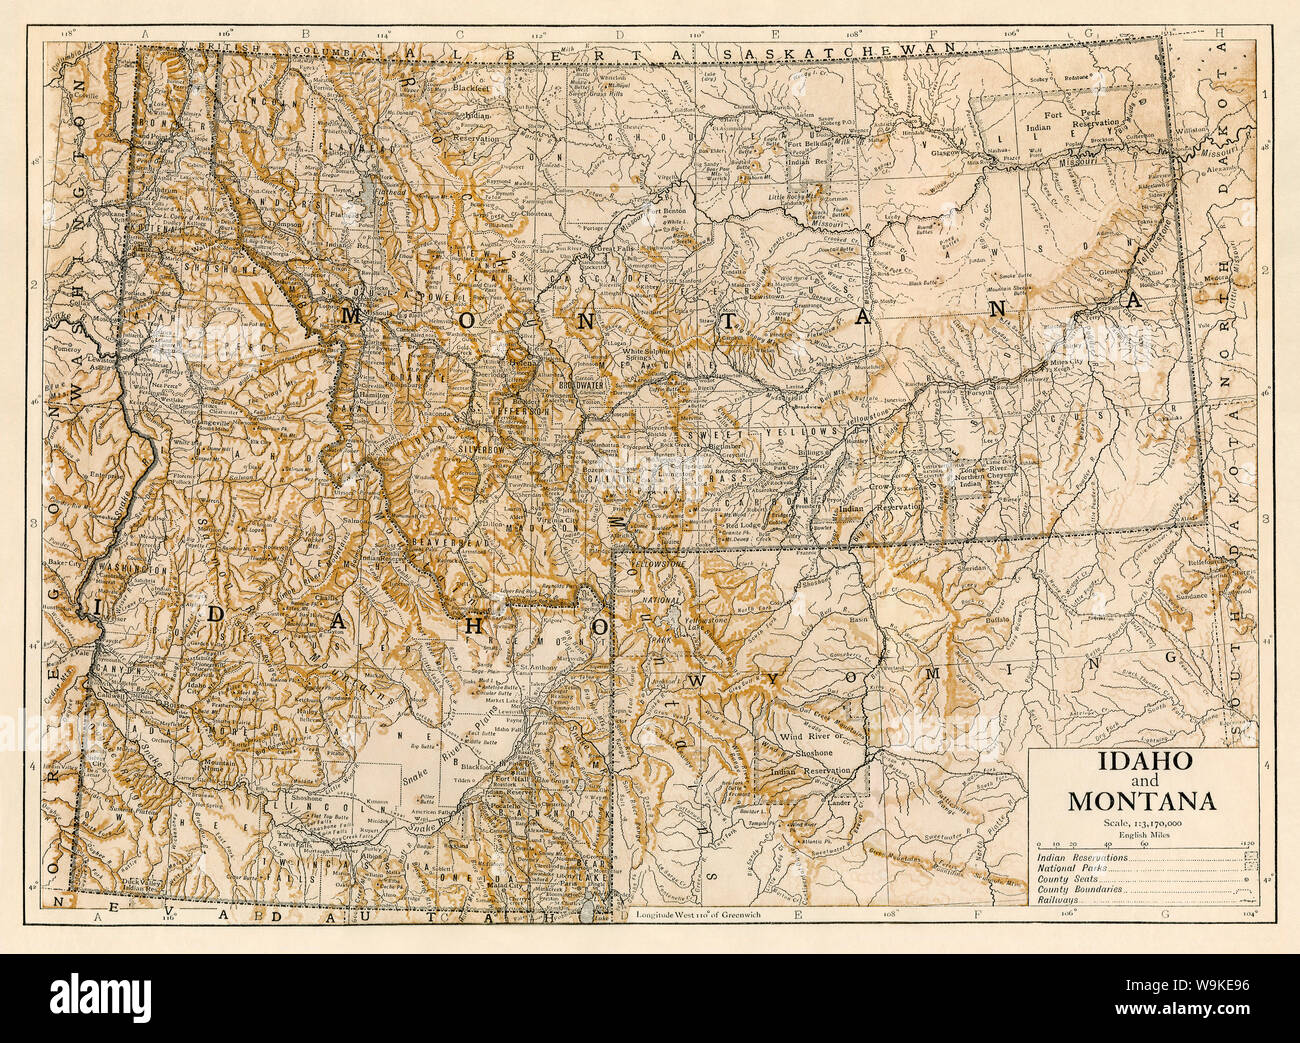 Site de l'Idaho et du Montana, 1870. Lithographie couleur Banque D'Images